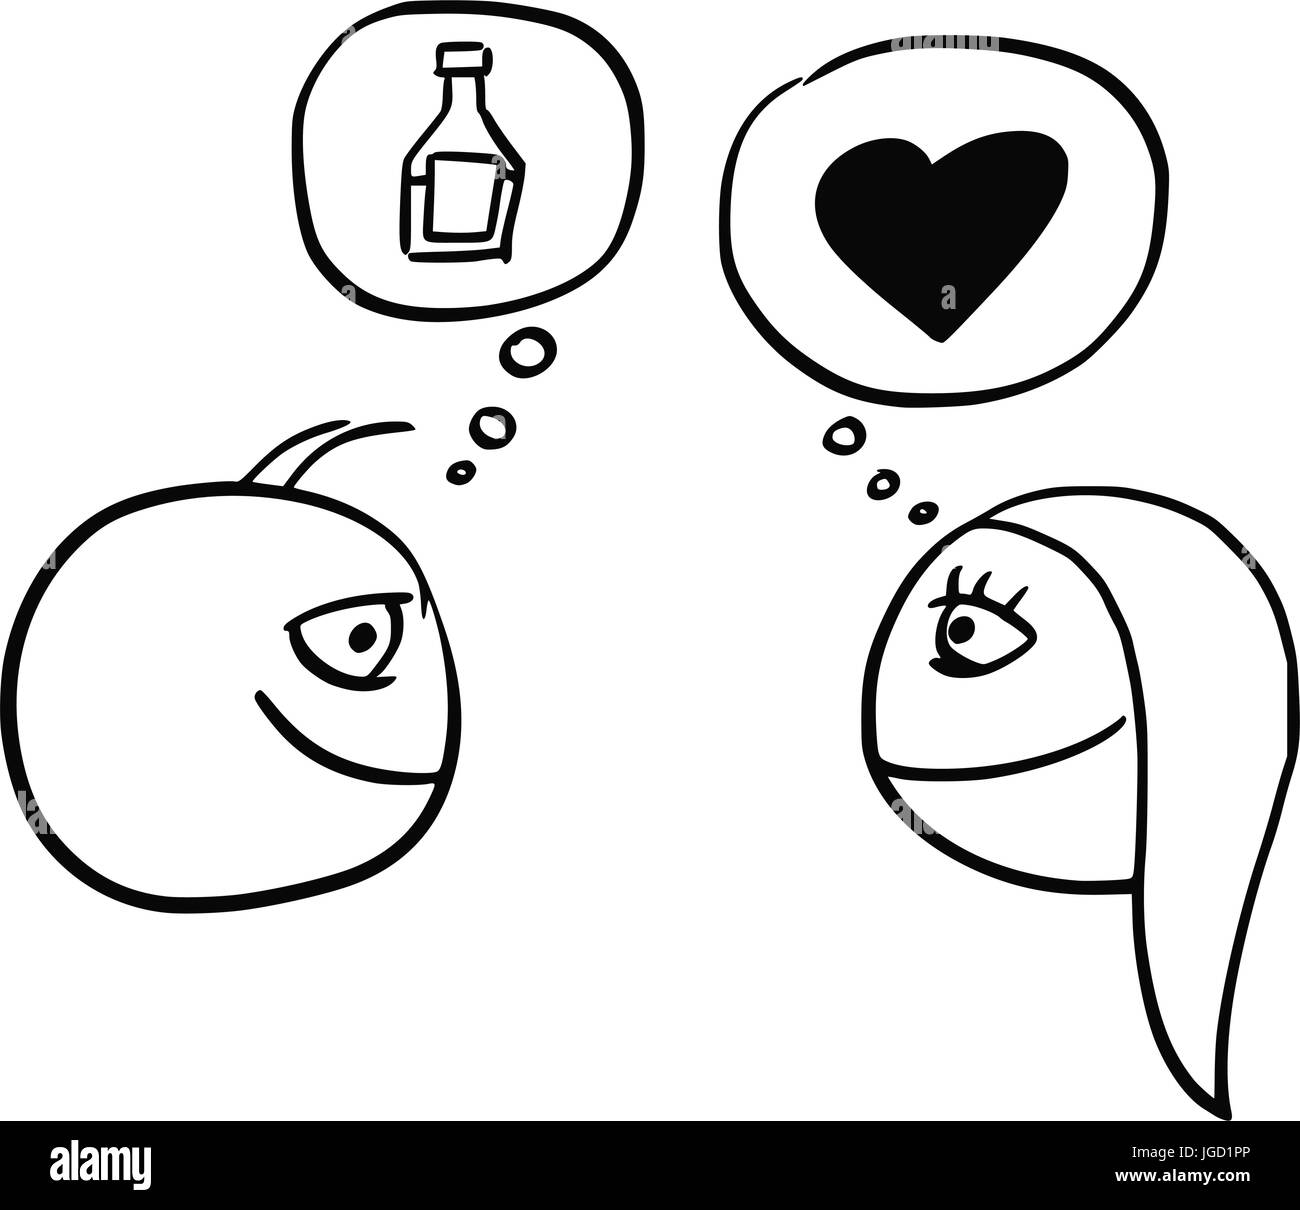 Cartoon-Vektor der Unterschied zwischen Mann und Frau denken Getränk Flasche Flasche und das Herz-Symbol für Liebe und Beziehung Stock Vektor